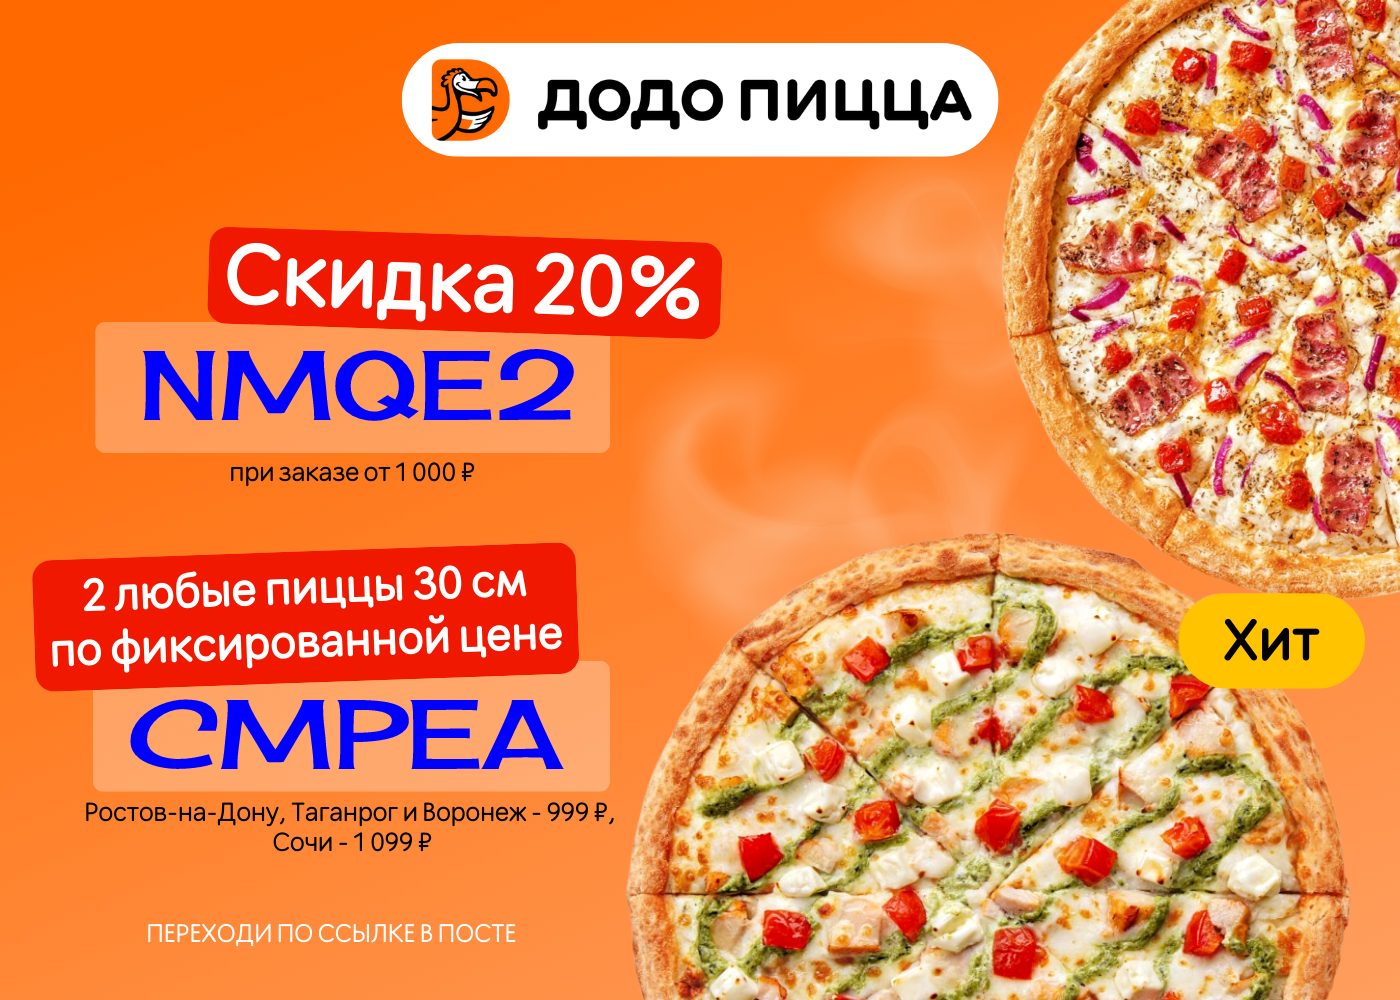 купоны алло пицца на скидку москва фото 29